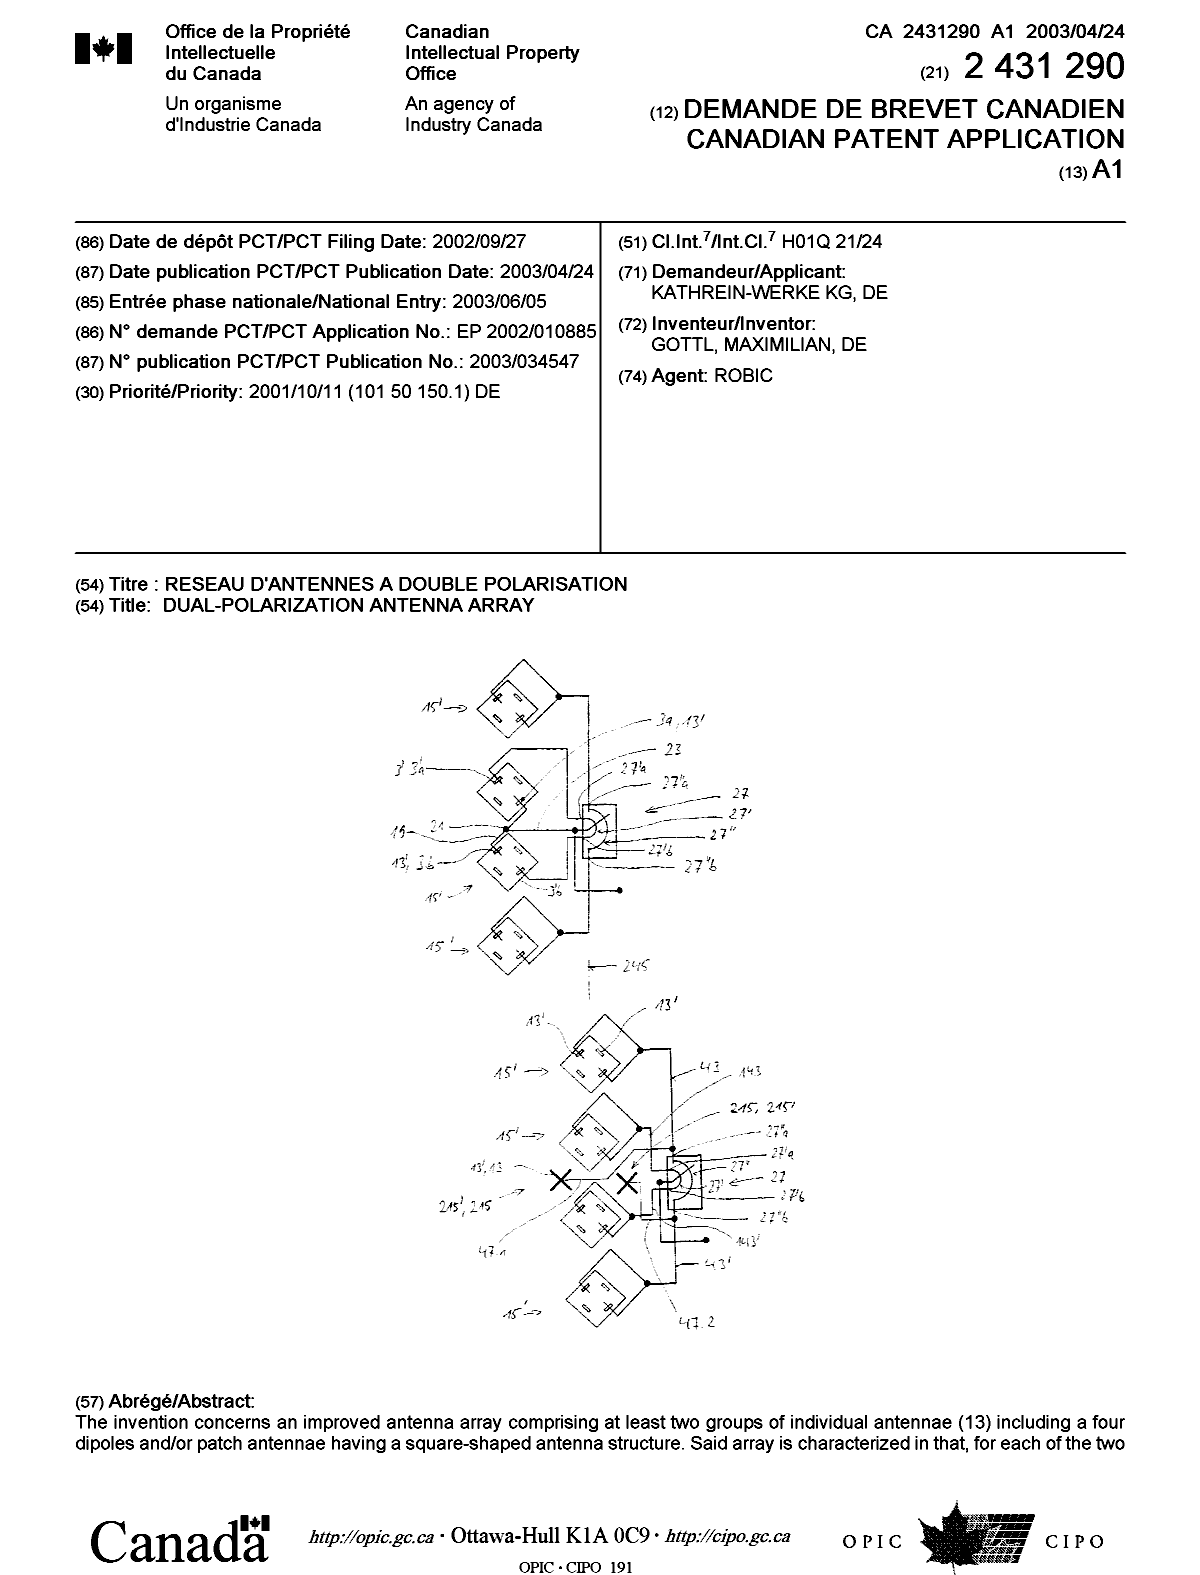 Document de brevet canadien 2431290. Page couverture 20030801. Image 1 de 2